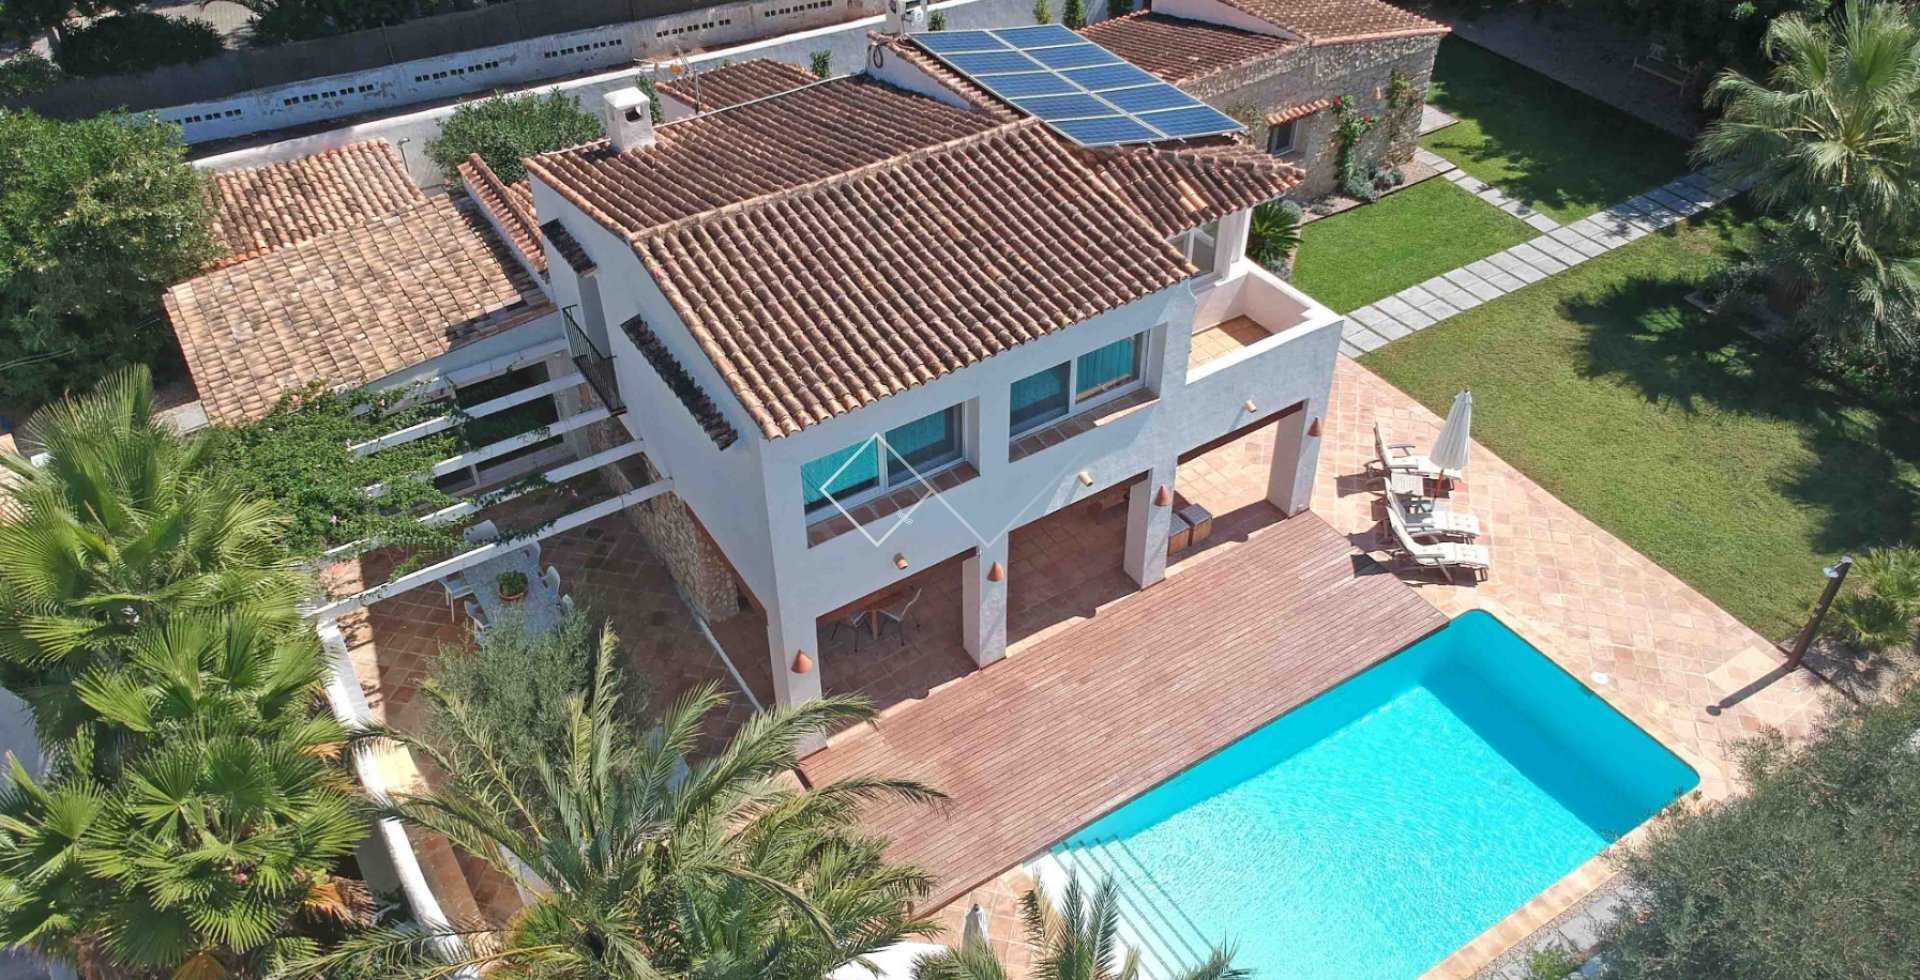 vue de l´oiseau - A vendre : superbe villa à El Portet, Moraira à seulement 300m de la plage